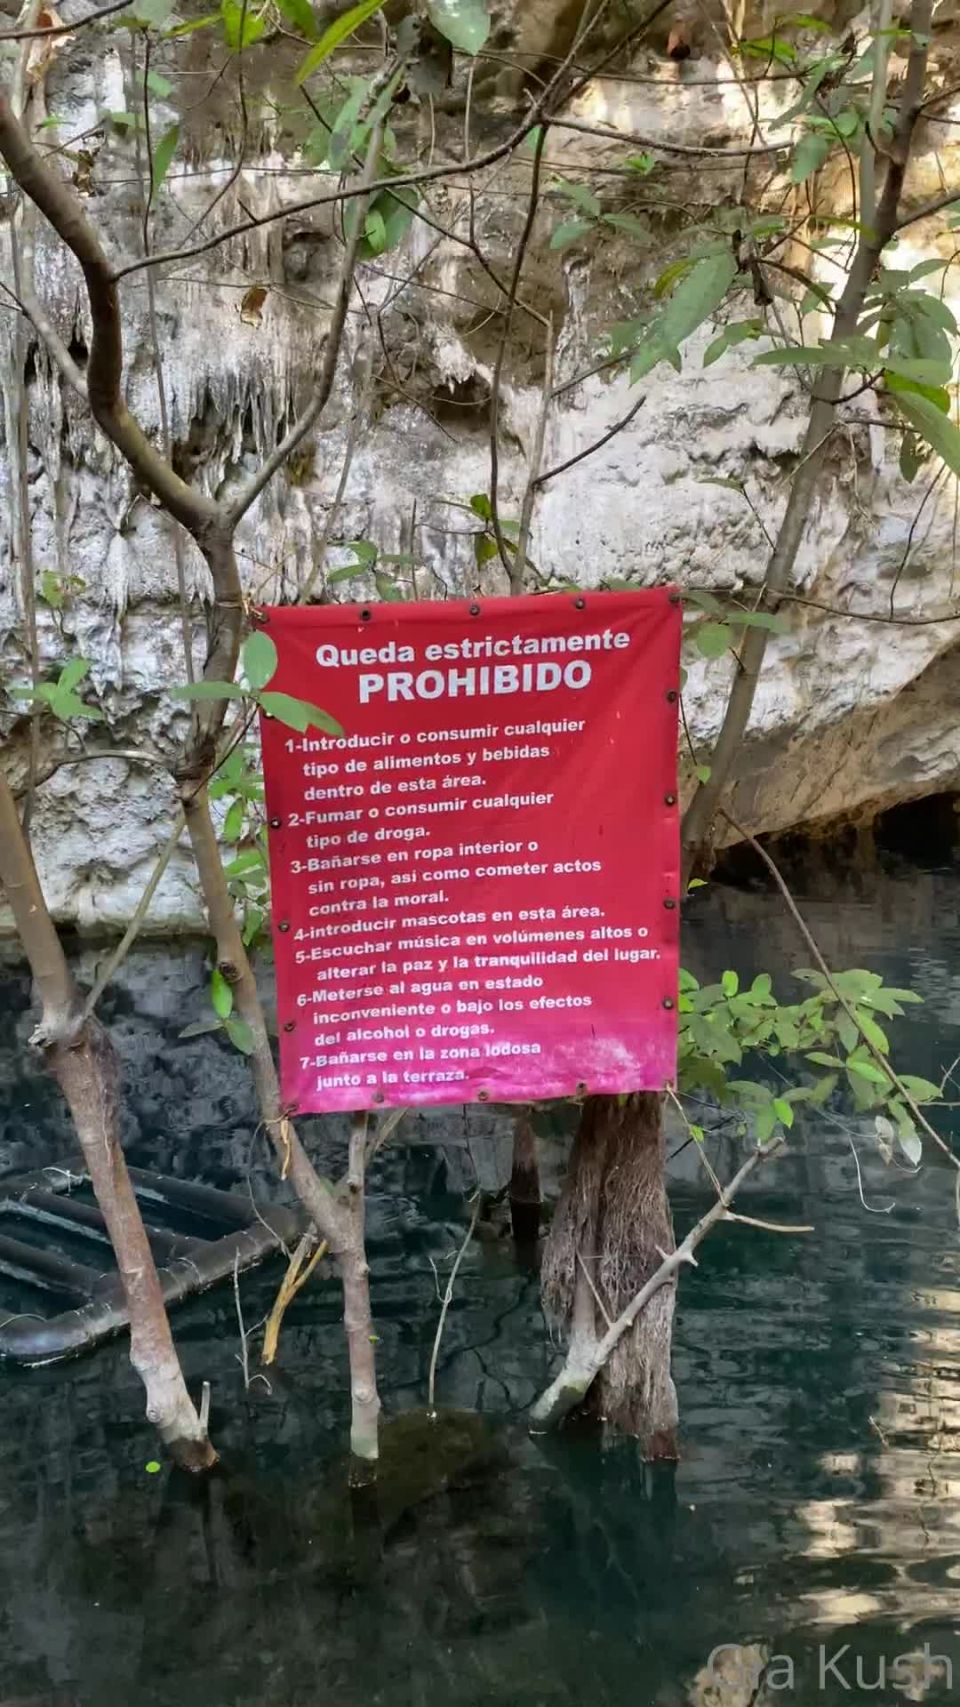 Gia Kush () Giakush - cenoteando y mamando eladminmx https onlyfanscom eladminmx 12-09-2021